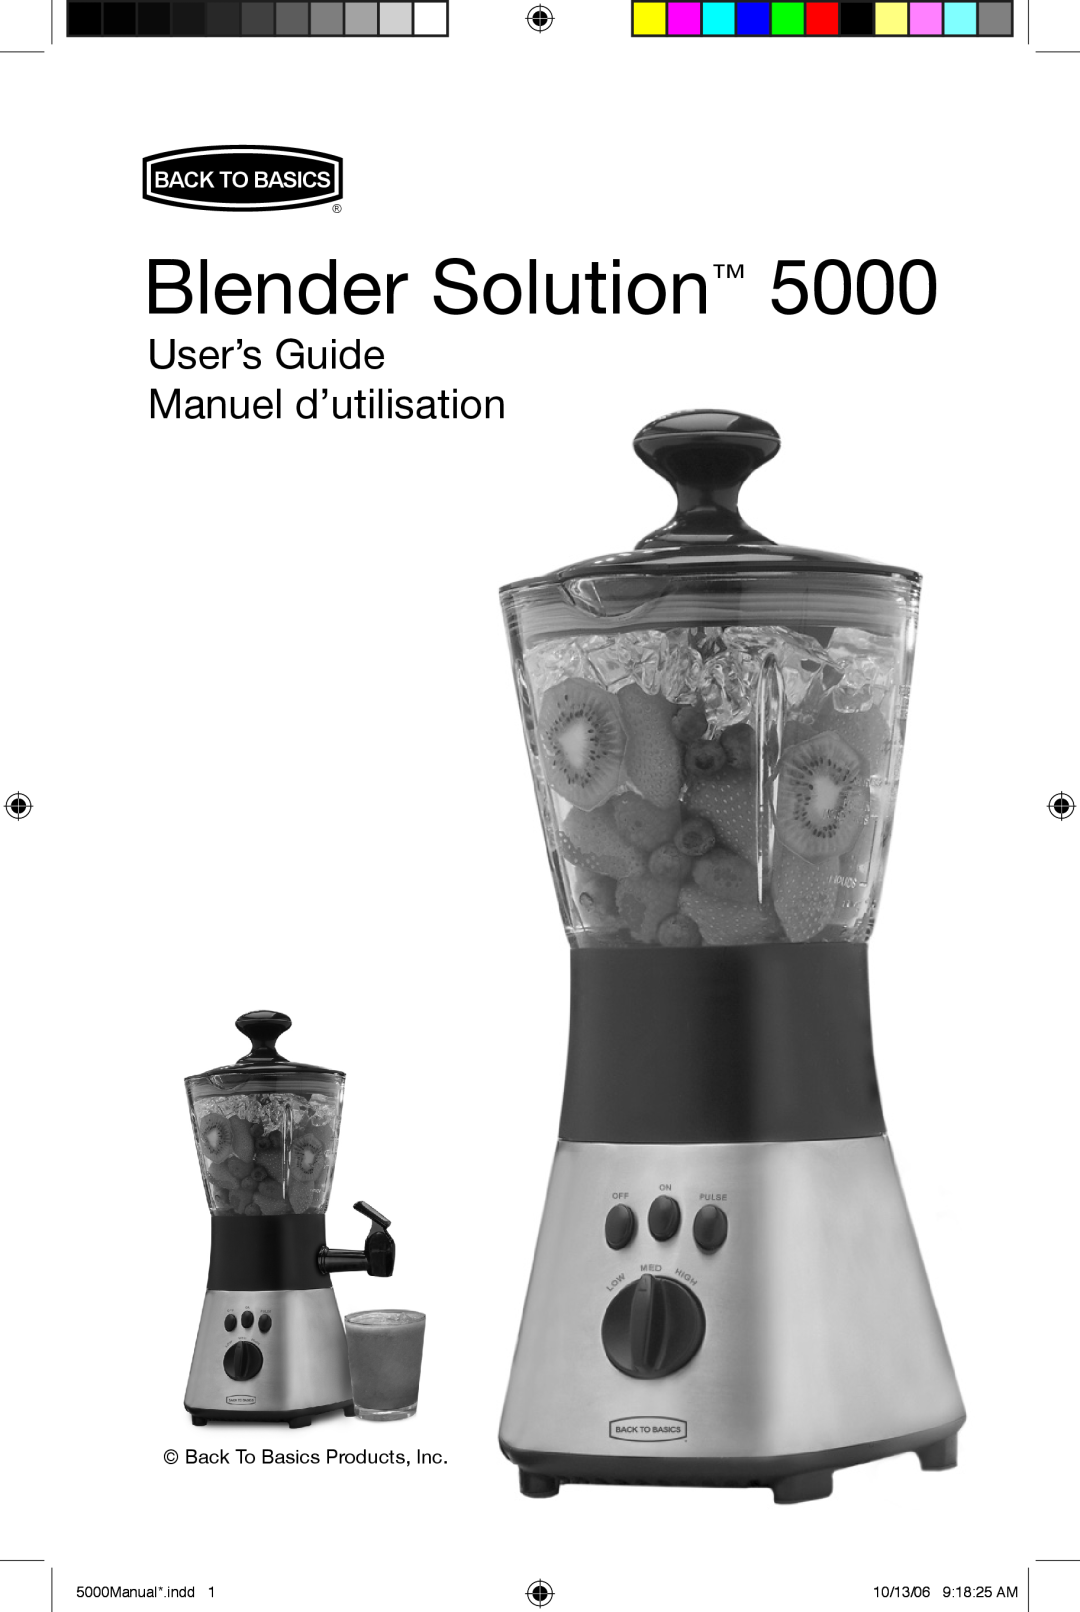 Black & Decker 5500 manuel dutilisation Blender Solution, User’s Guide Manuel d’utilisation, Back To Basics 